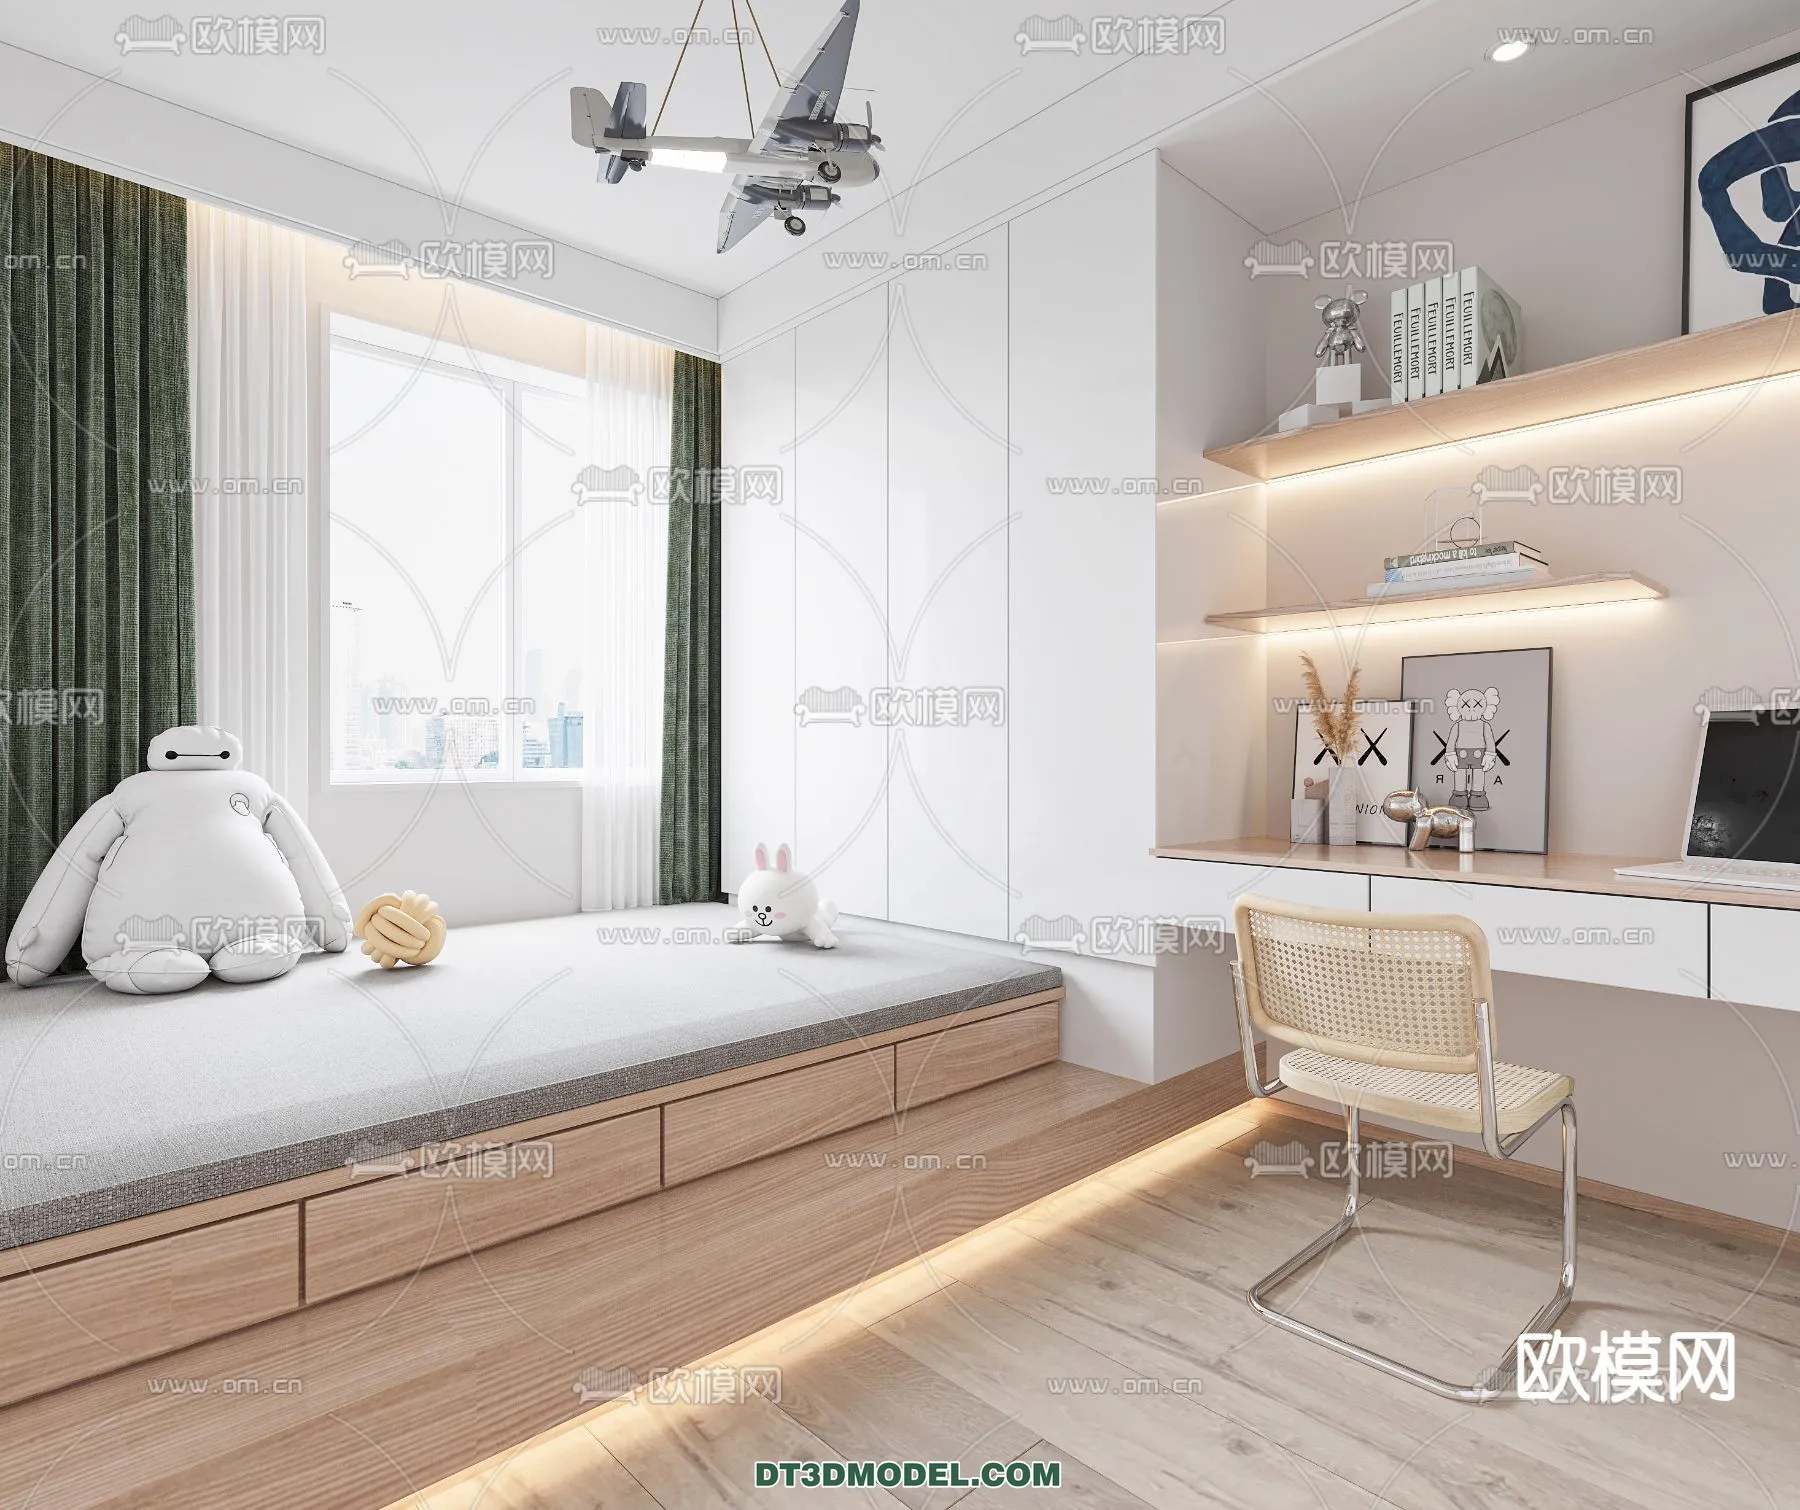 Tatami Bedroom – Japan Bedroom – 3D Scene – 055